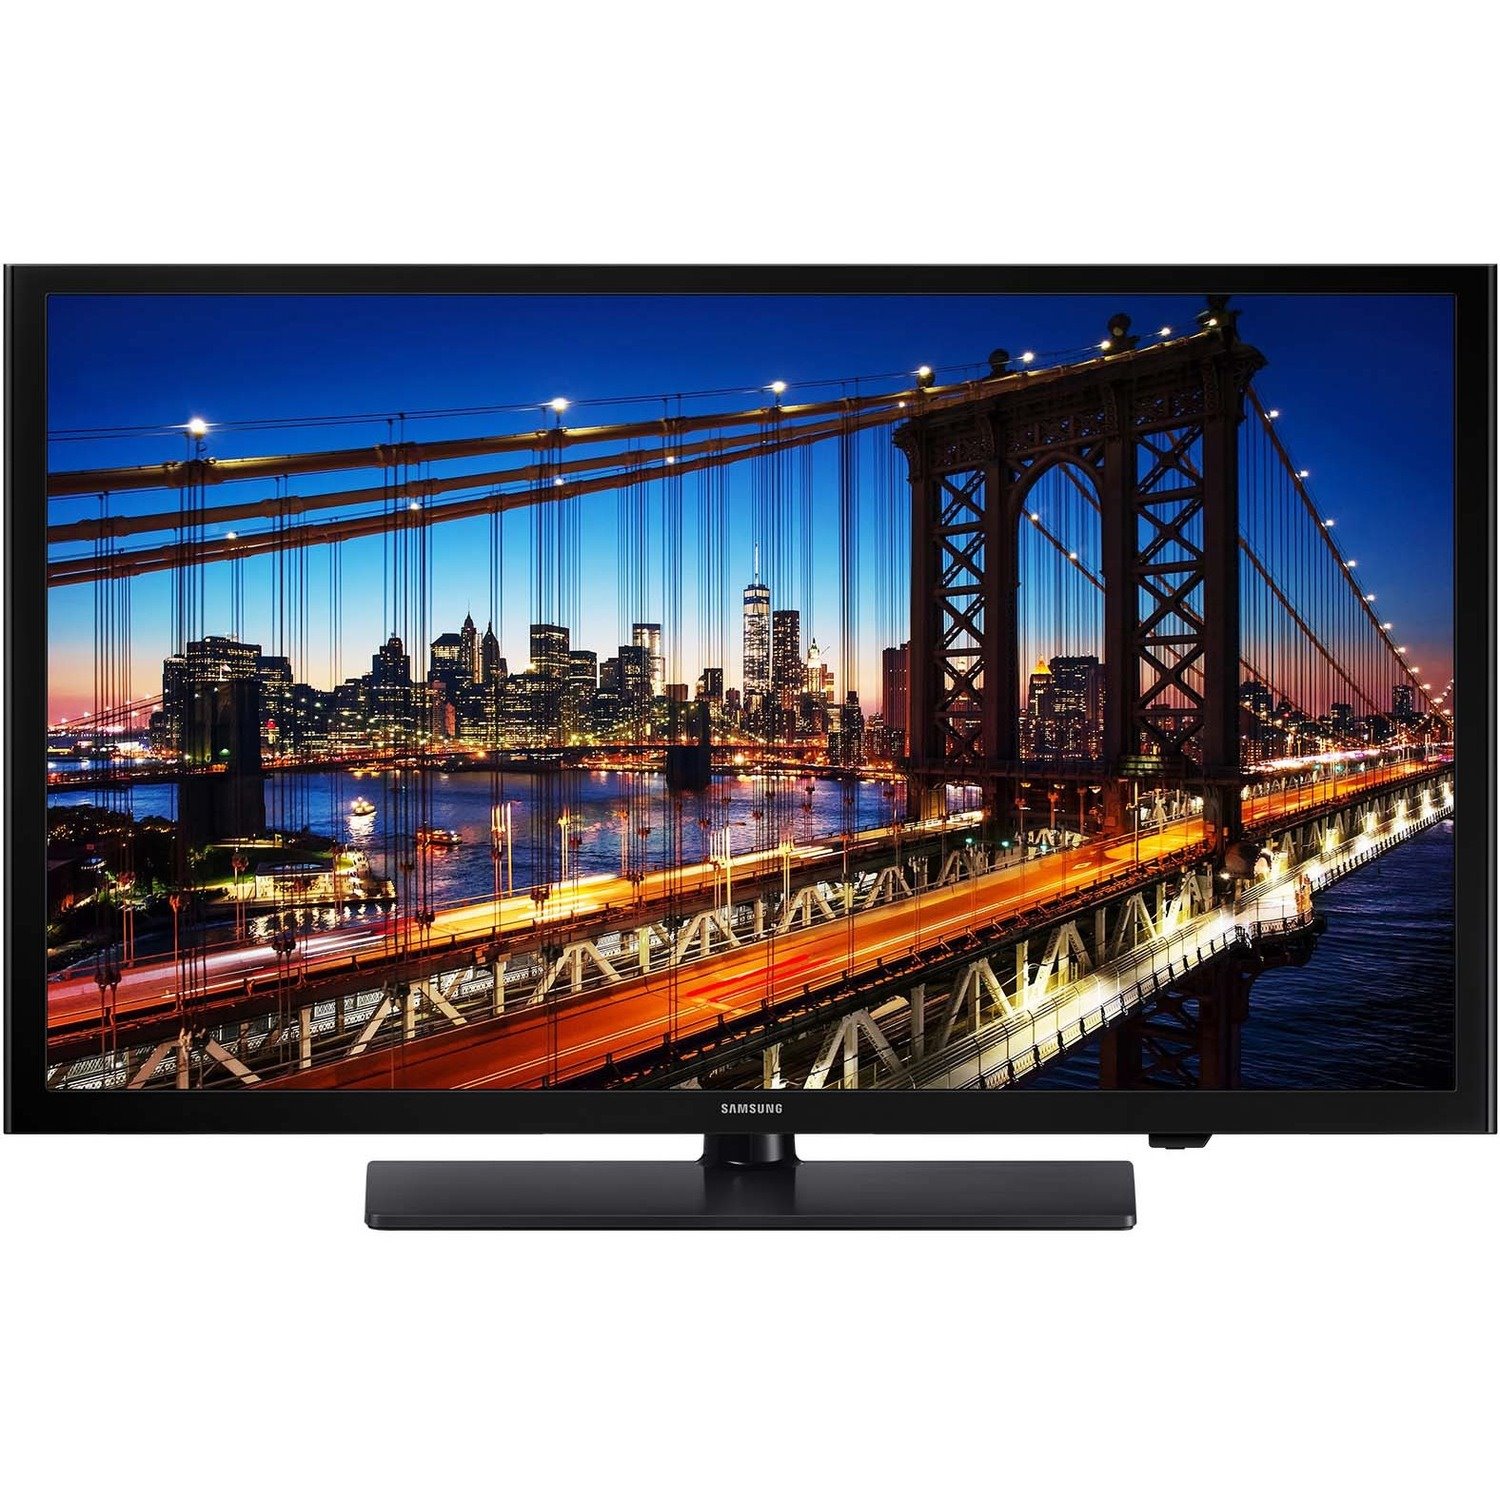 Samsung 690 HG32NF690GF 32" Smart LED-LCD TV - HDTV - Black Hairline